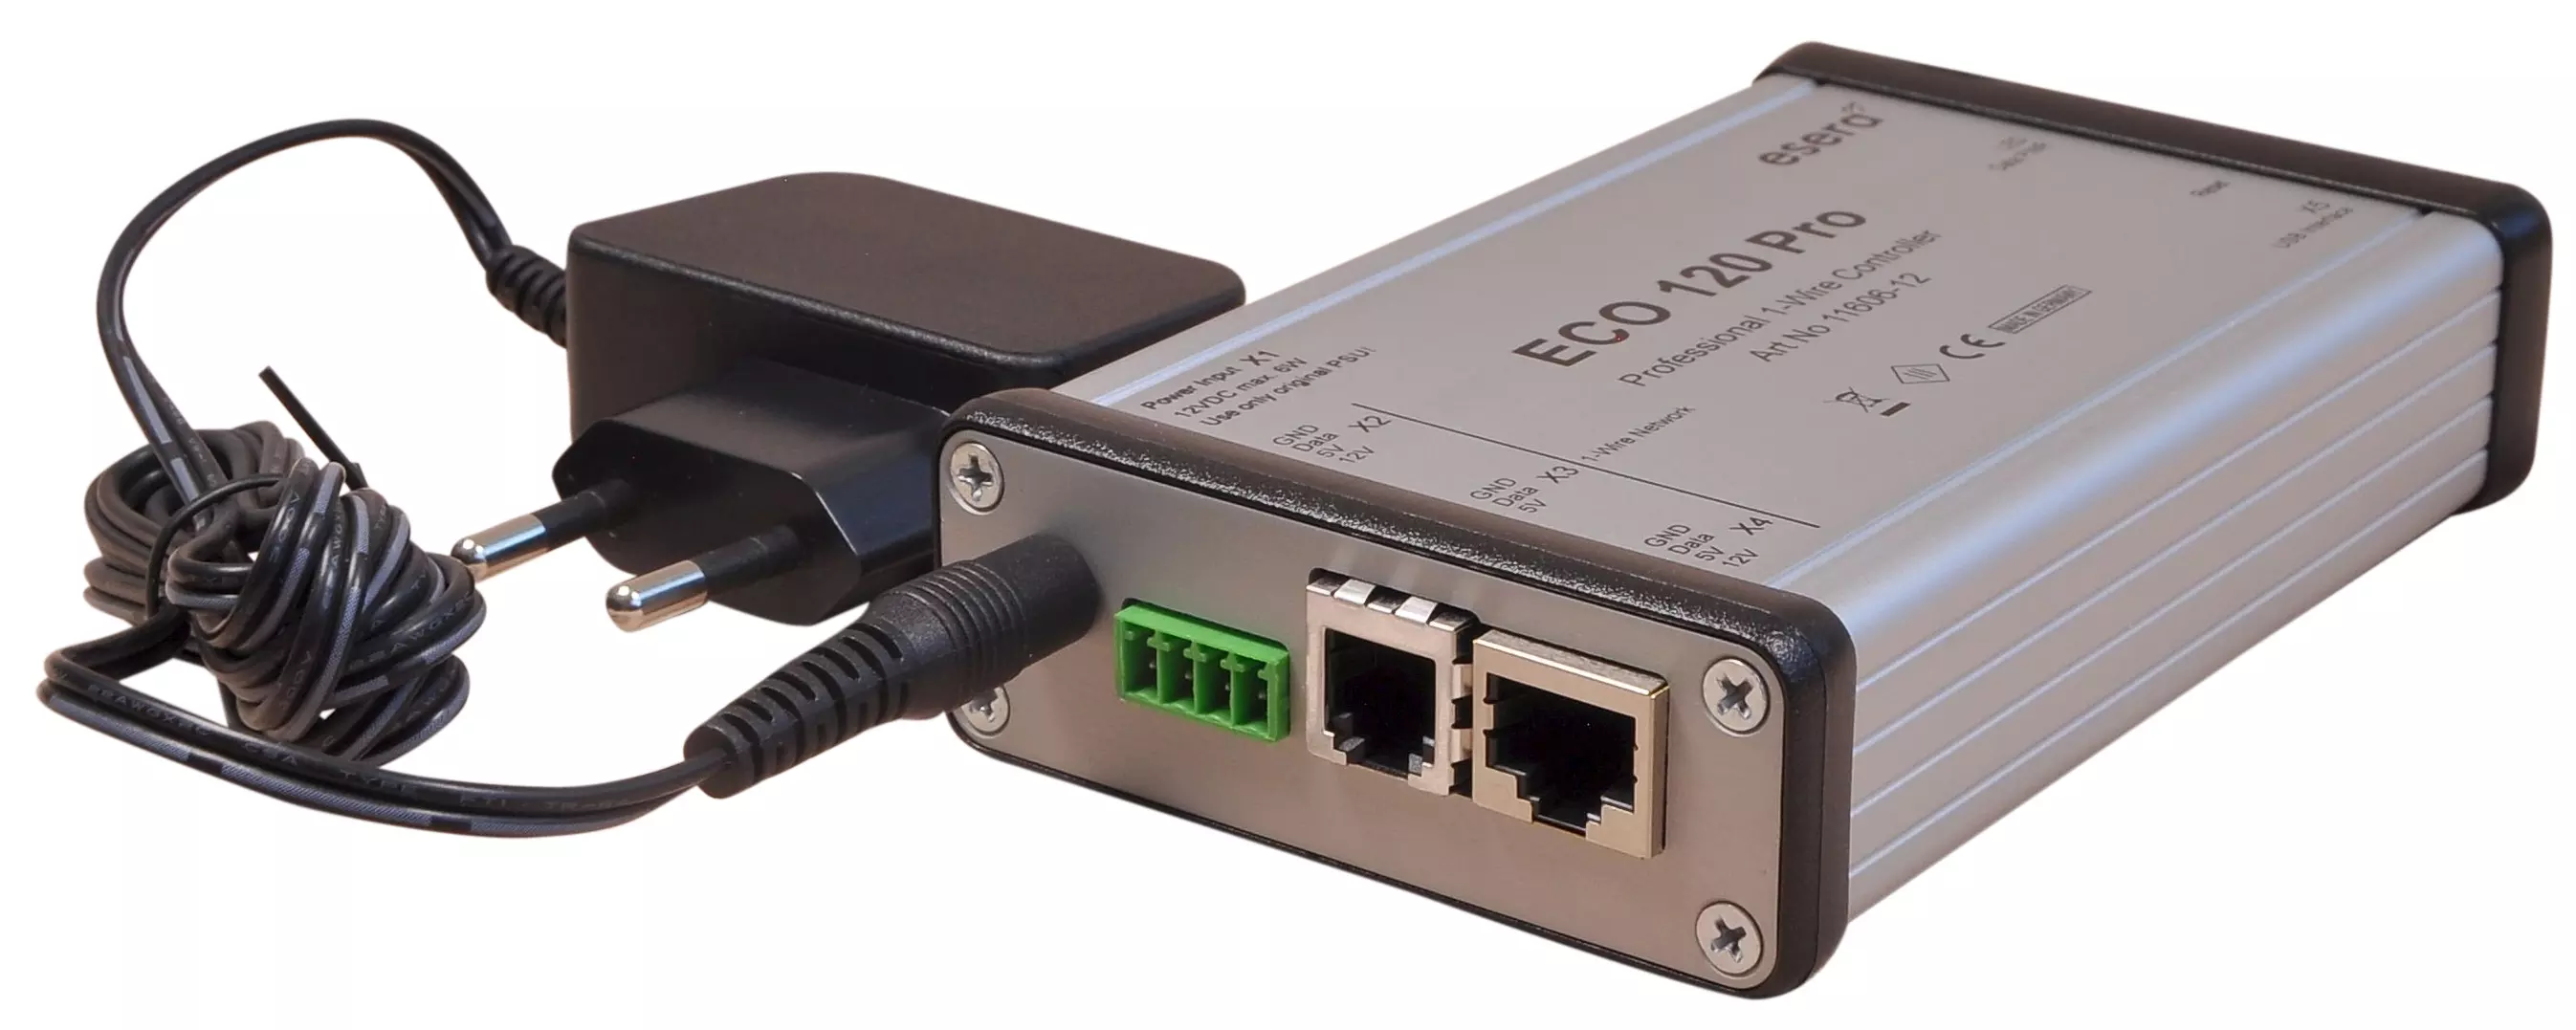 ECO 120 Tisch-Gateway für 1-Wire Bus, USB, intelligente Systemschnittstelle